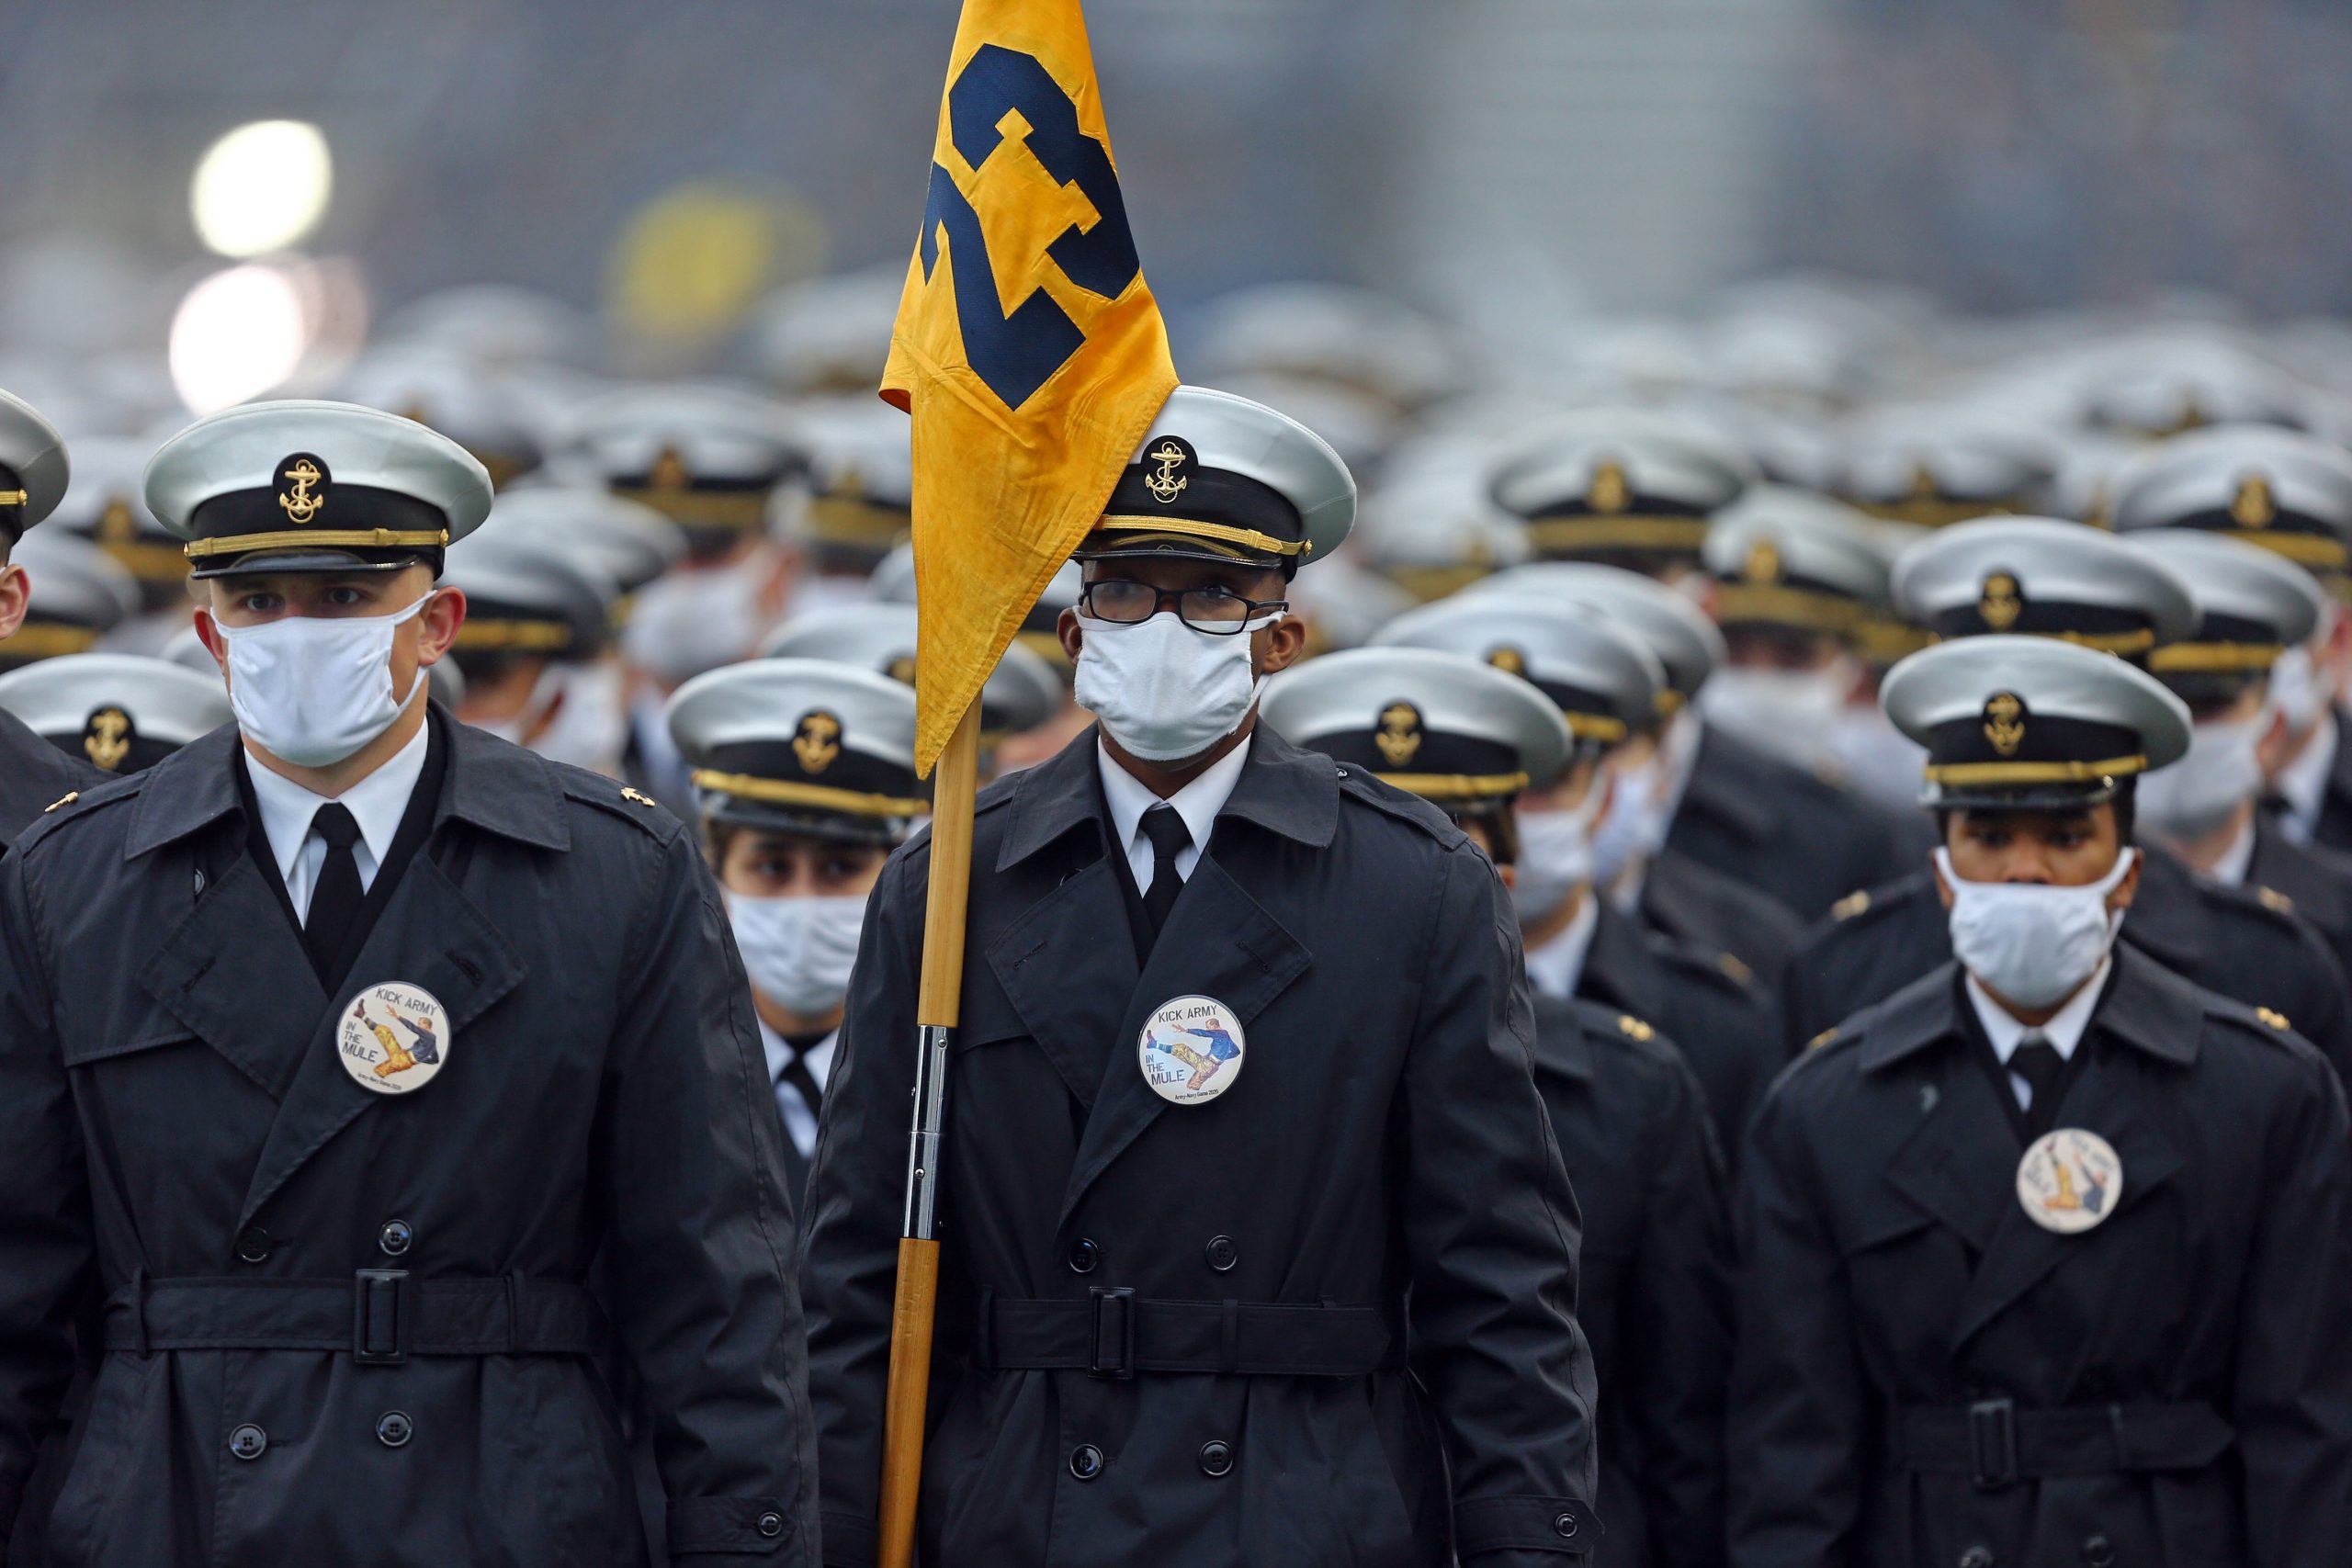 NCAA Football: Navy at Army